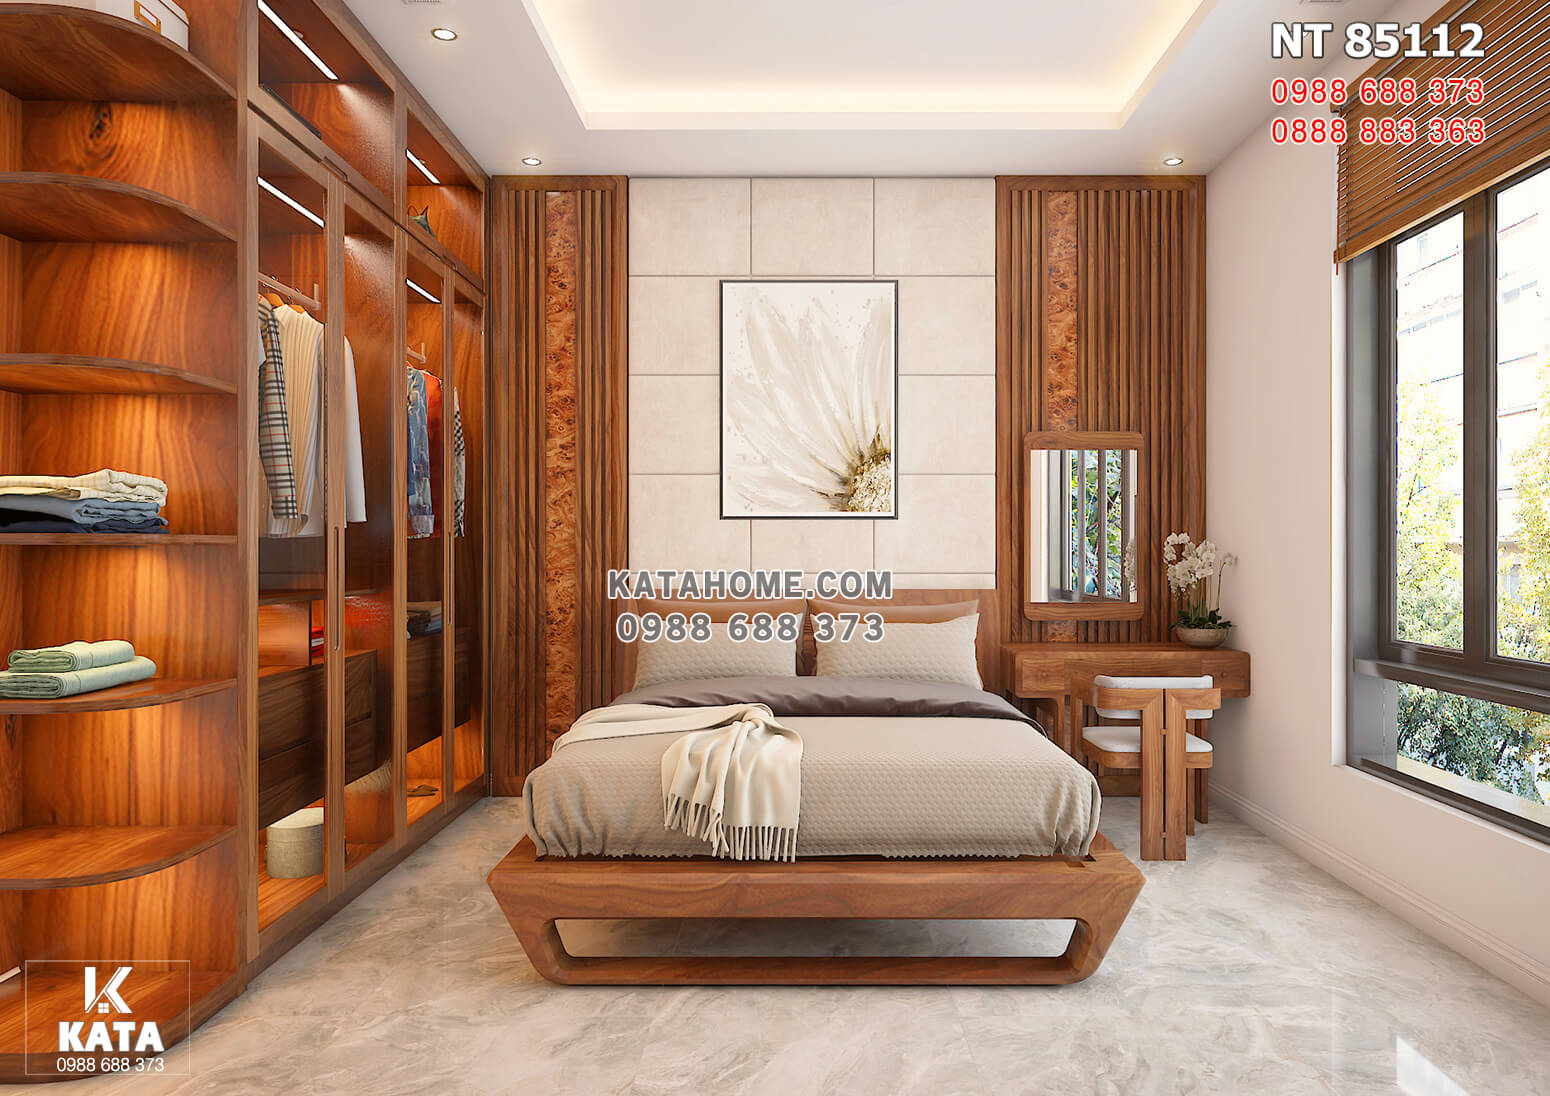 Hình ảnh: Không gian phòng ngủ hiện đại với nội thất gỗ óc chó